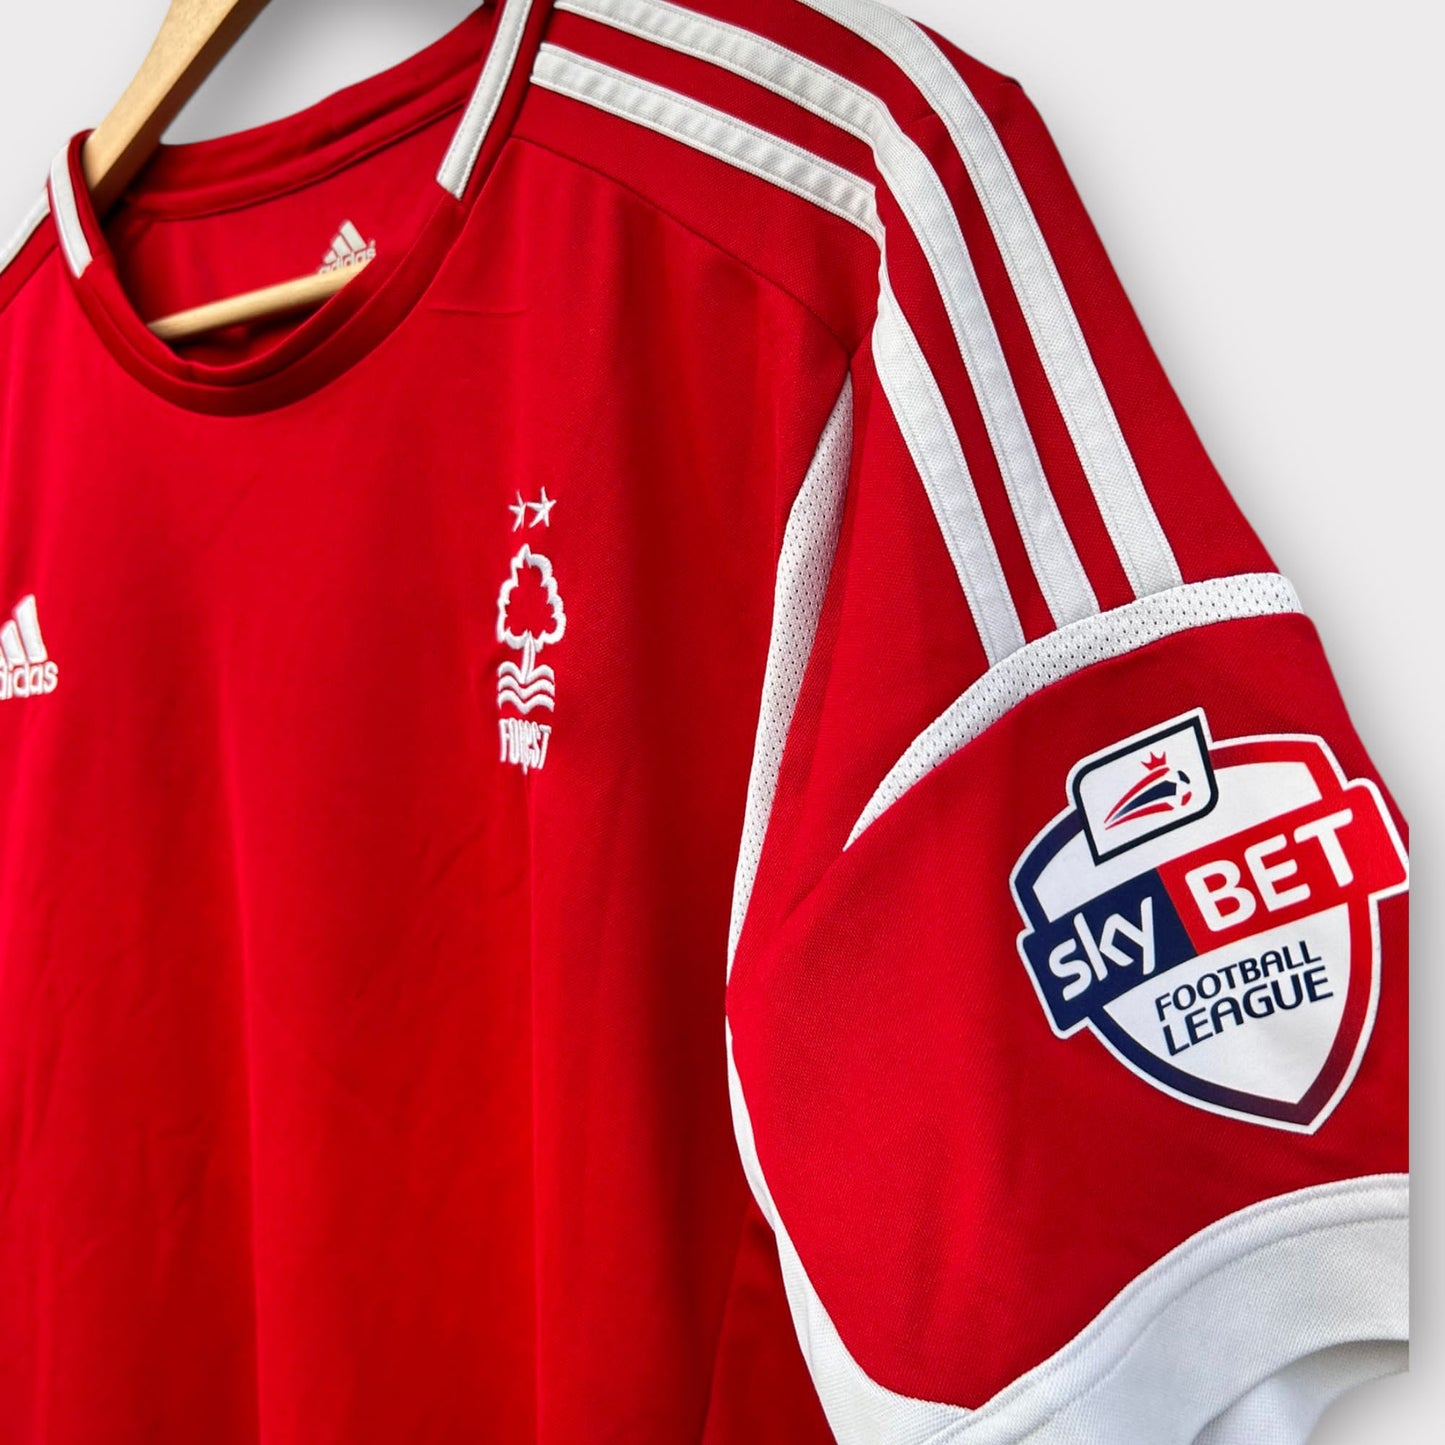 Nottingham Forest 2013/14 Home Shirt (XL)